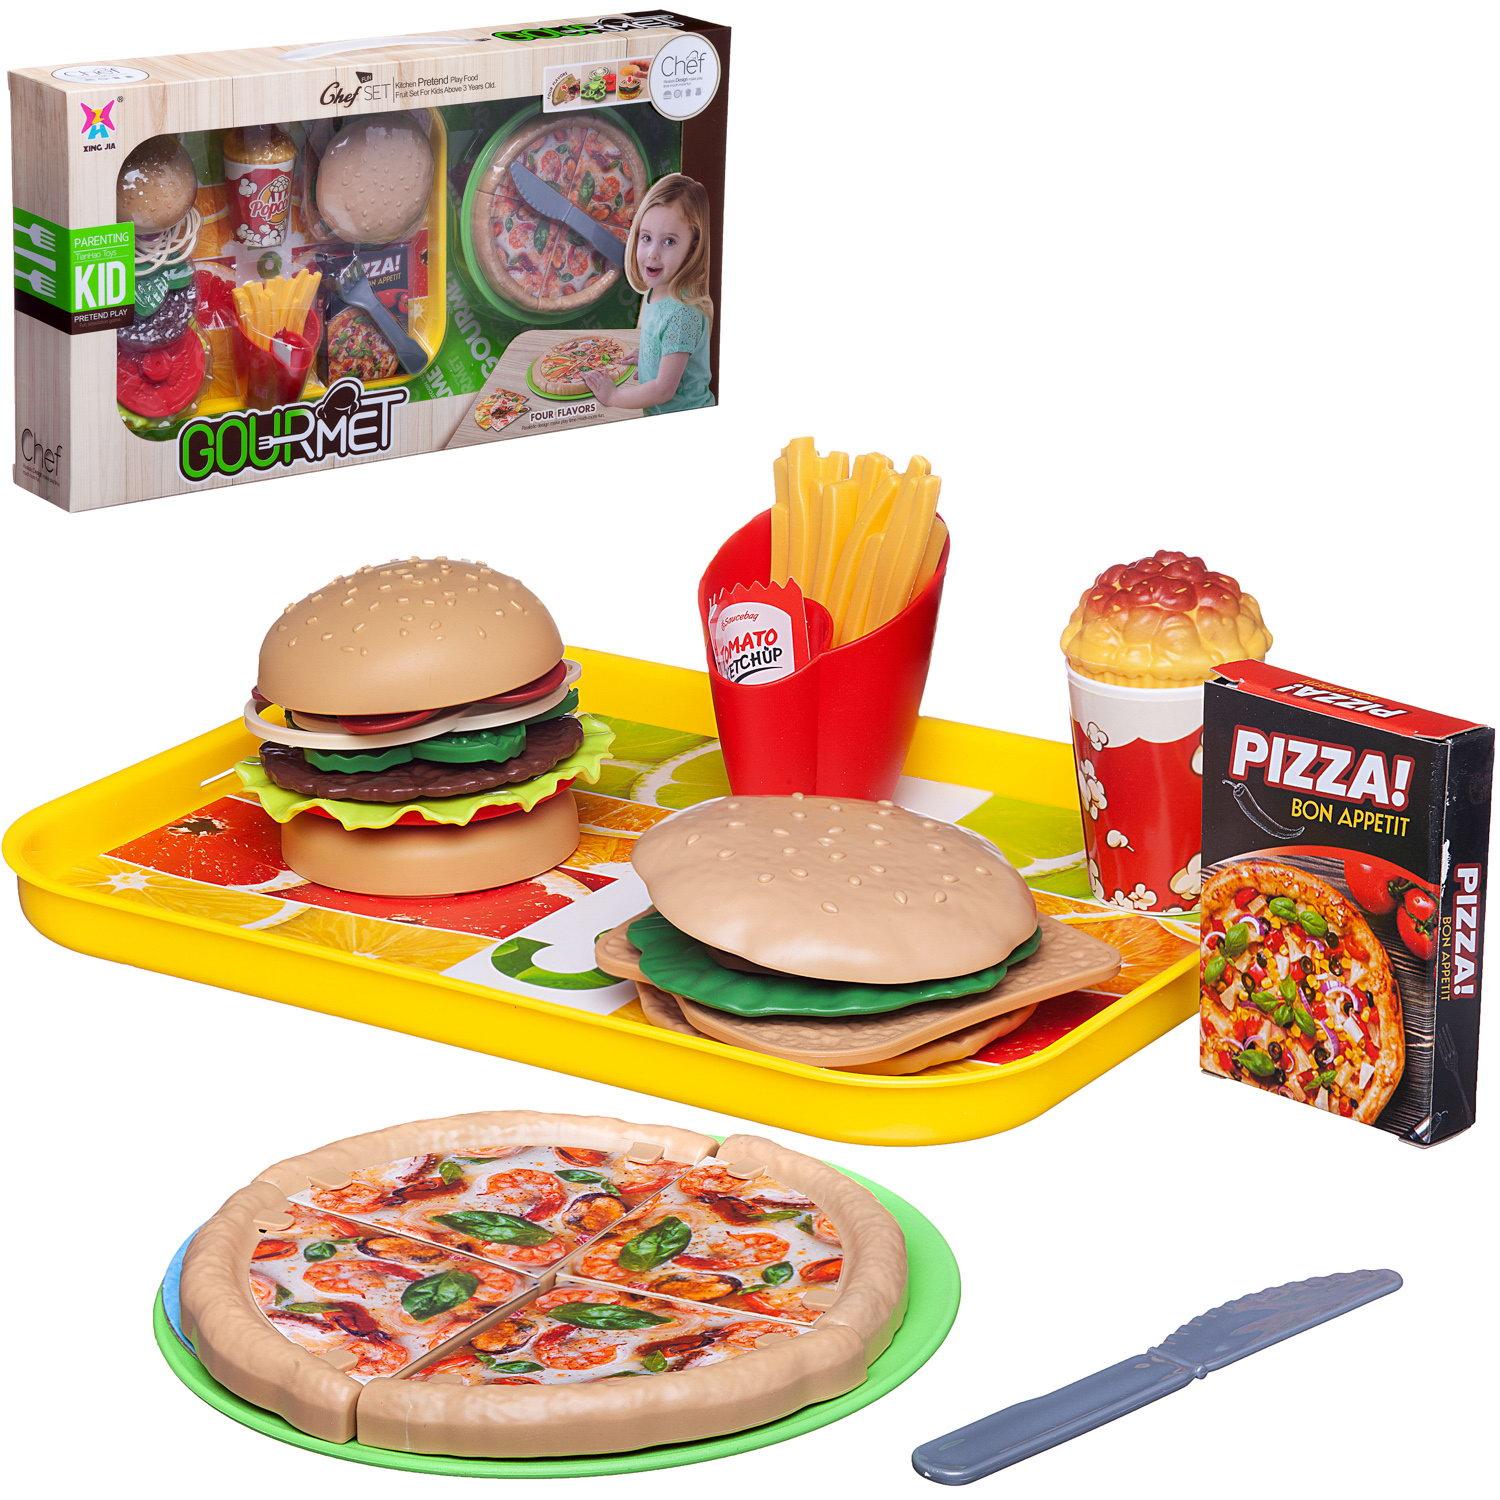 Купить Набор продуктов Junfa Гурман: Сытный обед с пиццей и бургерами в компании друзей WK-17345, Junfa toys,